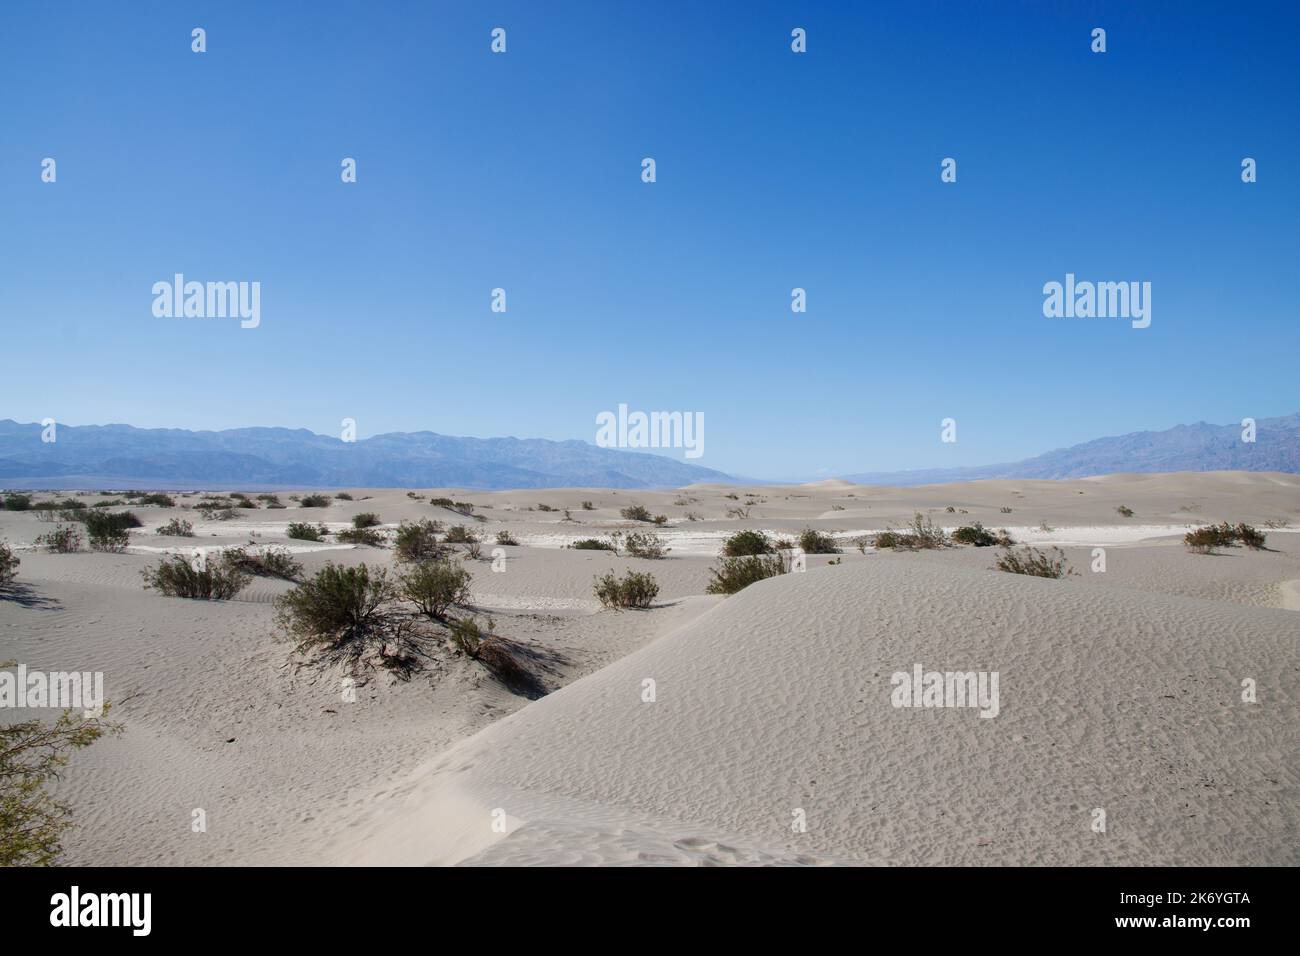 Dunes de sable de Mesquite Flat dans le parc national de la Vallée de la mort en Californie. Désert en Californie Banque D'Images